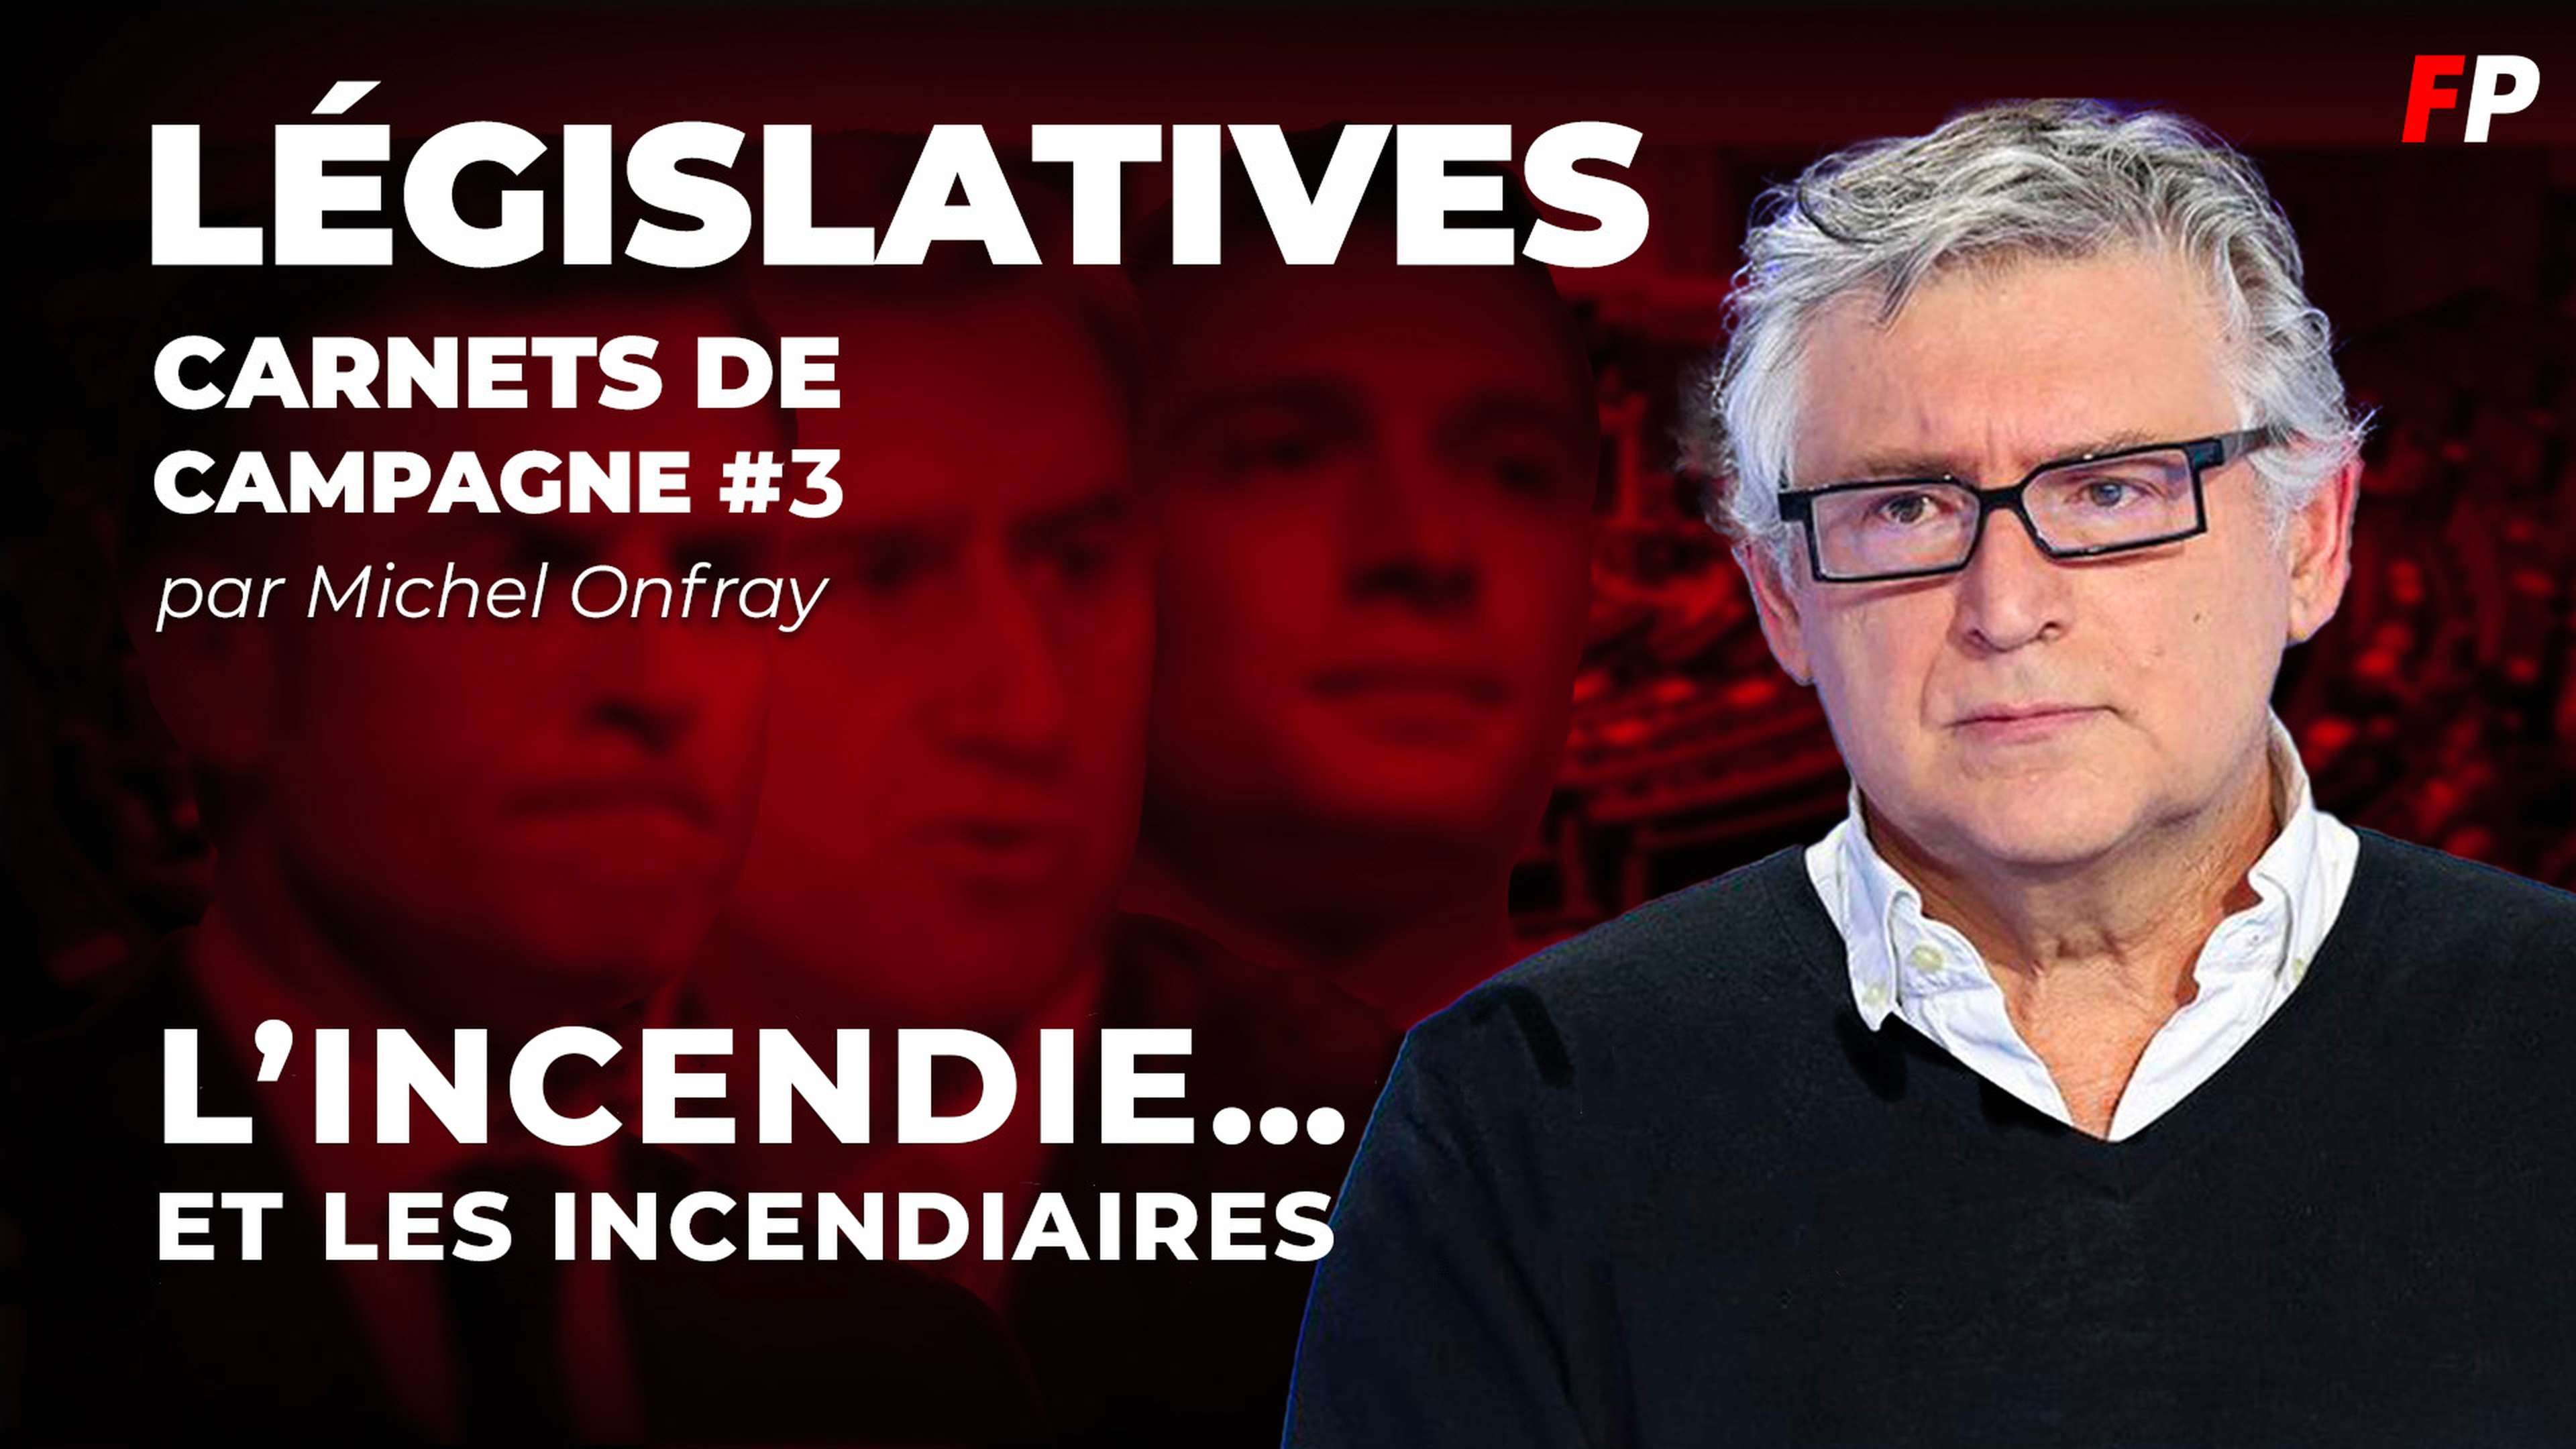 Législatives, le carnet de campagne de Michel Onfray (épisode 3) : défendre la démocratie contre les partisans de la guerre civile